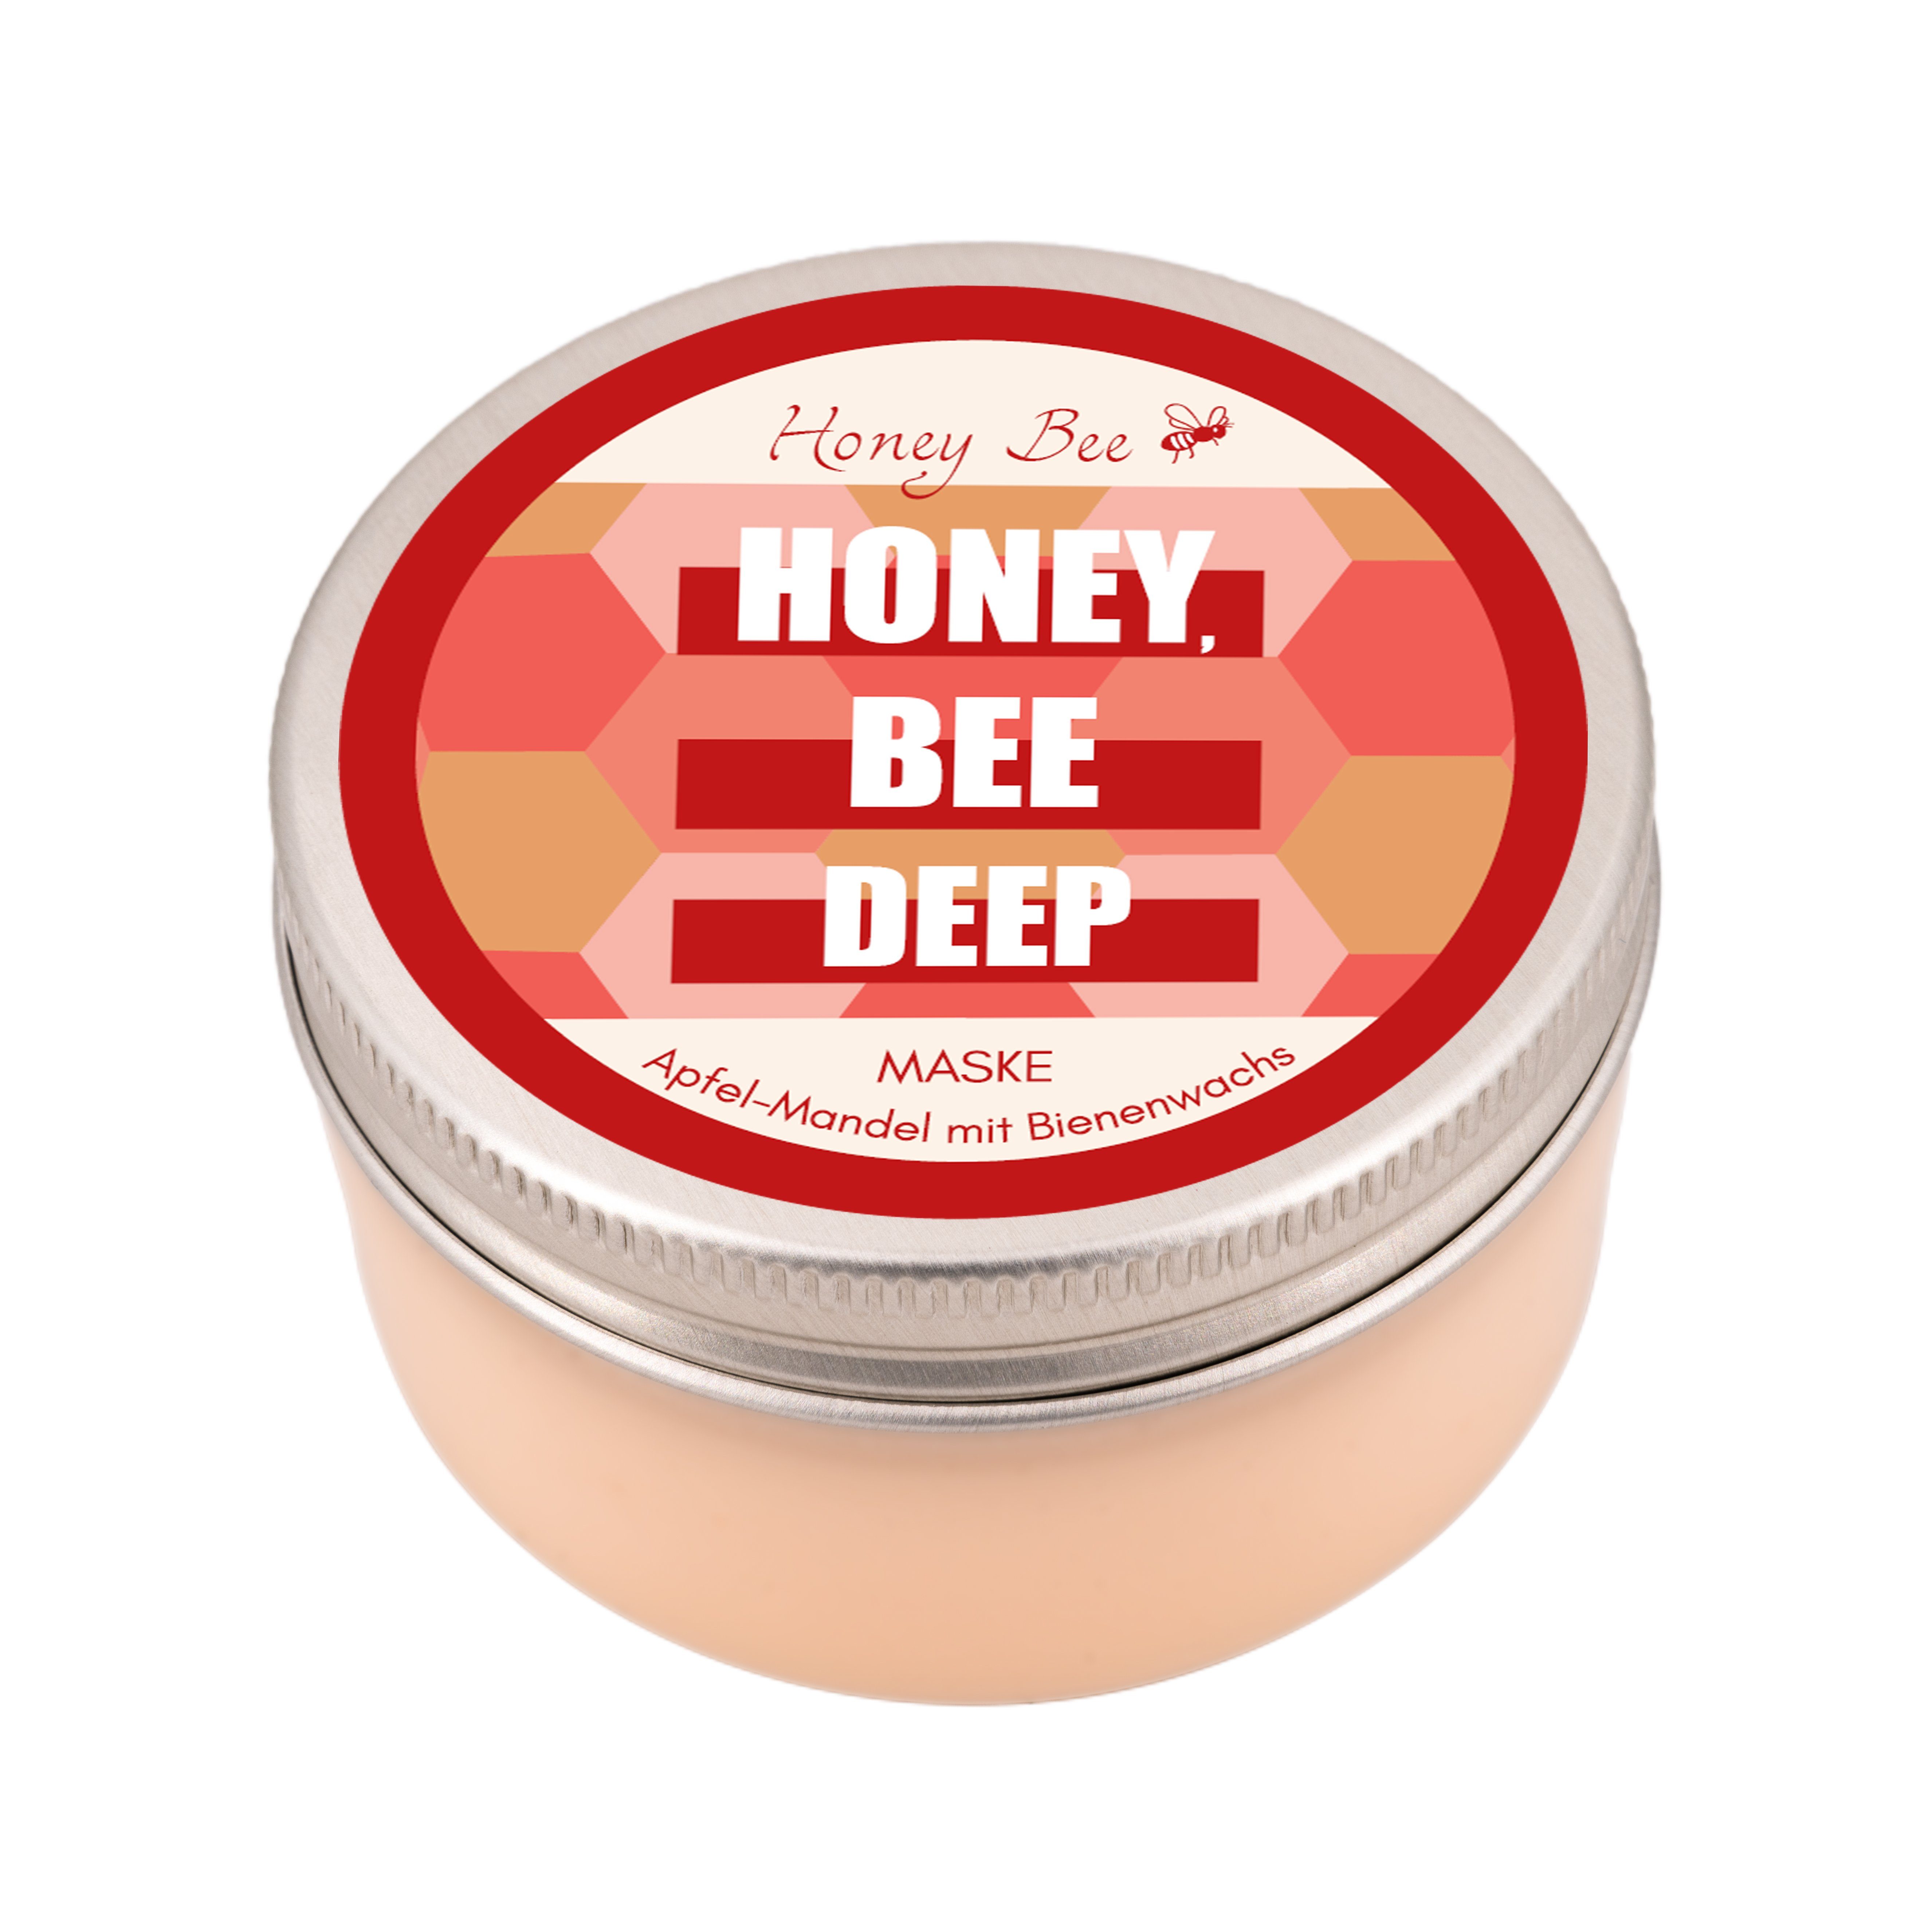 Naturkosmetik Cosmetics reichhaltig Matica Gesichtreinigungs-Set Bee Honey Super Set, Beauty